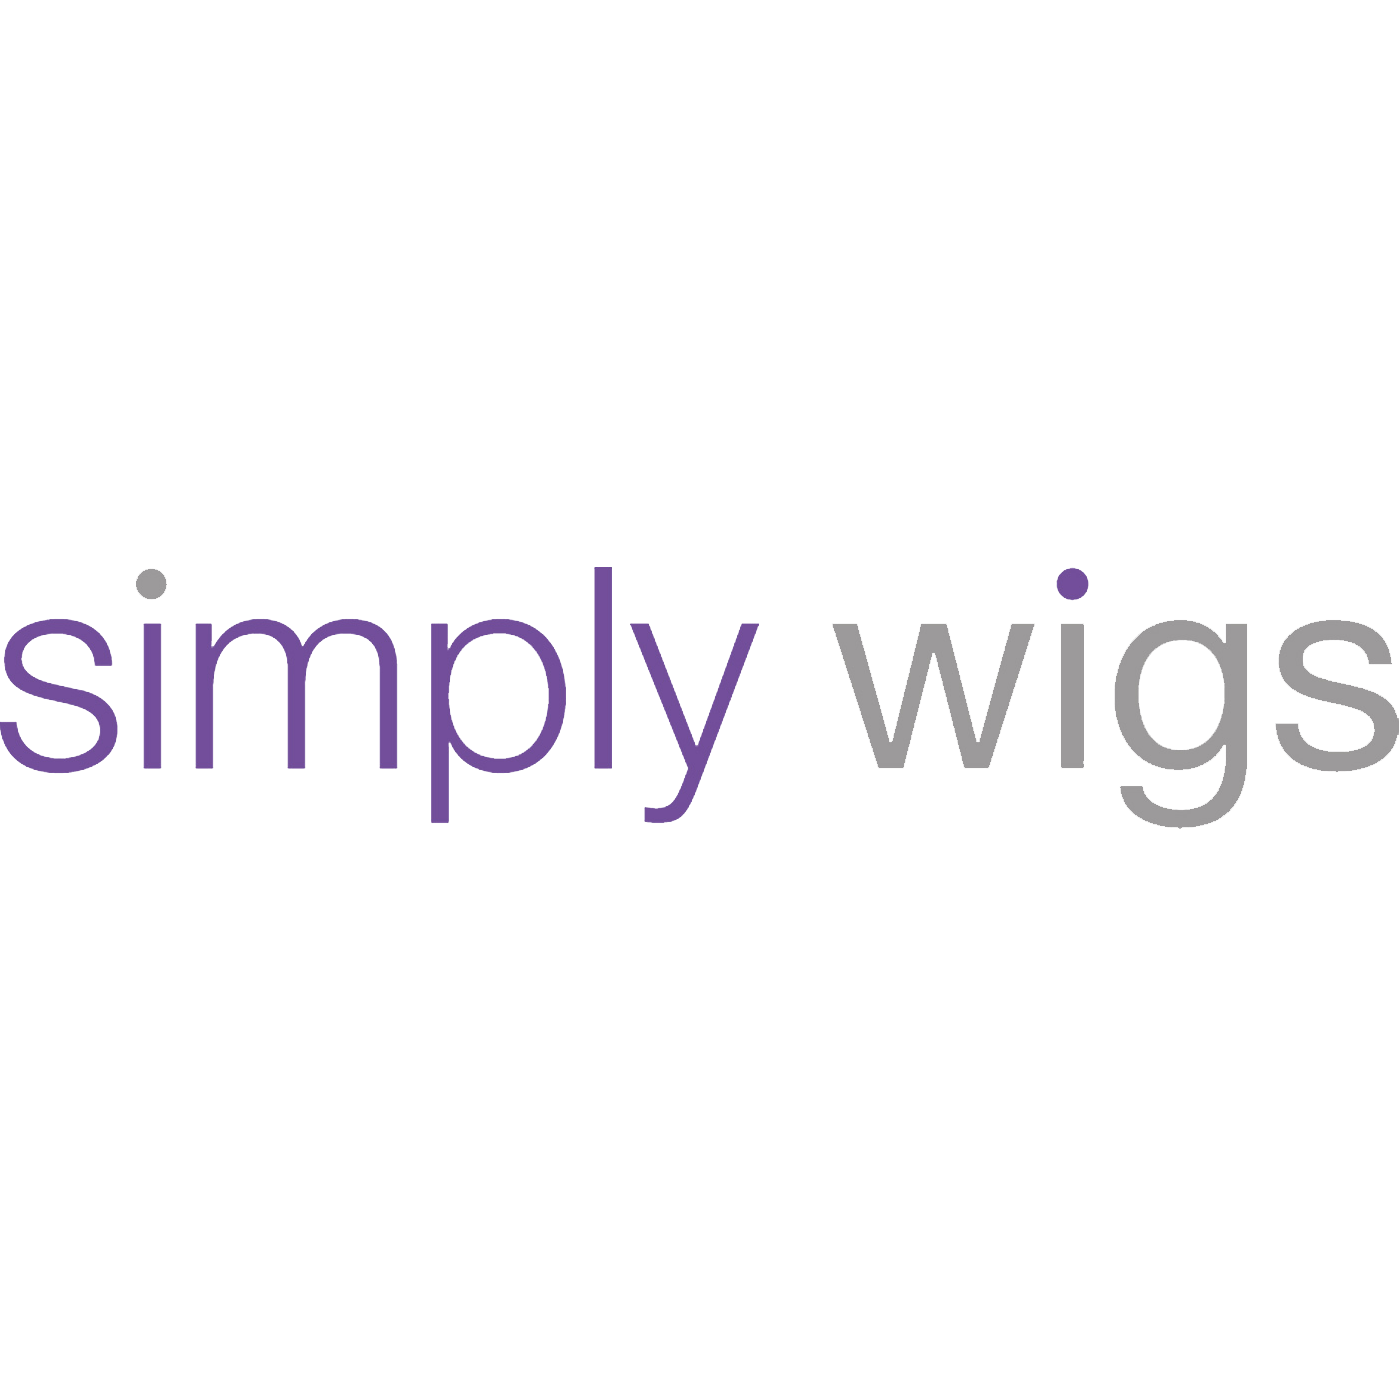 L'agenzia Zelst di Harrogate, England, United Kingdom ha aiutato Simply Wigs a far crescere il suo business con la SEO e il digital marketing